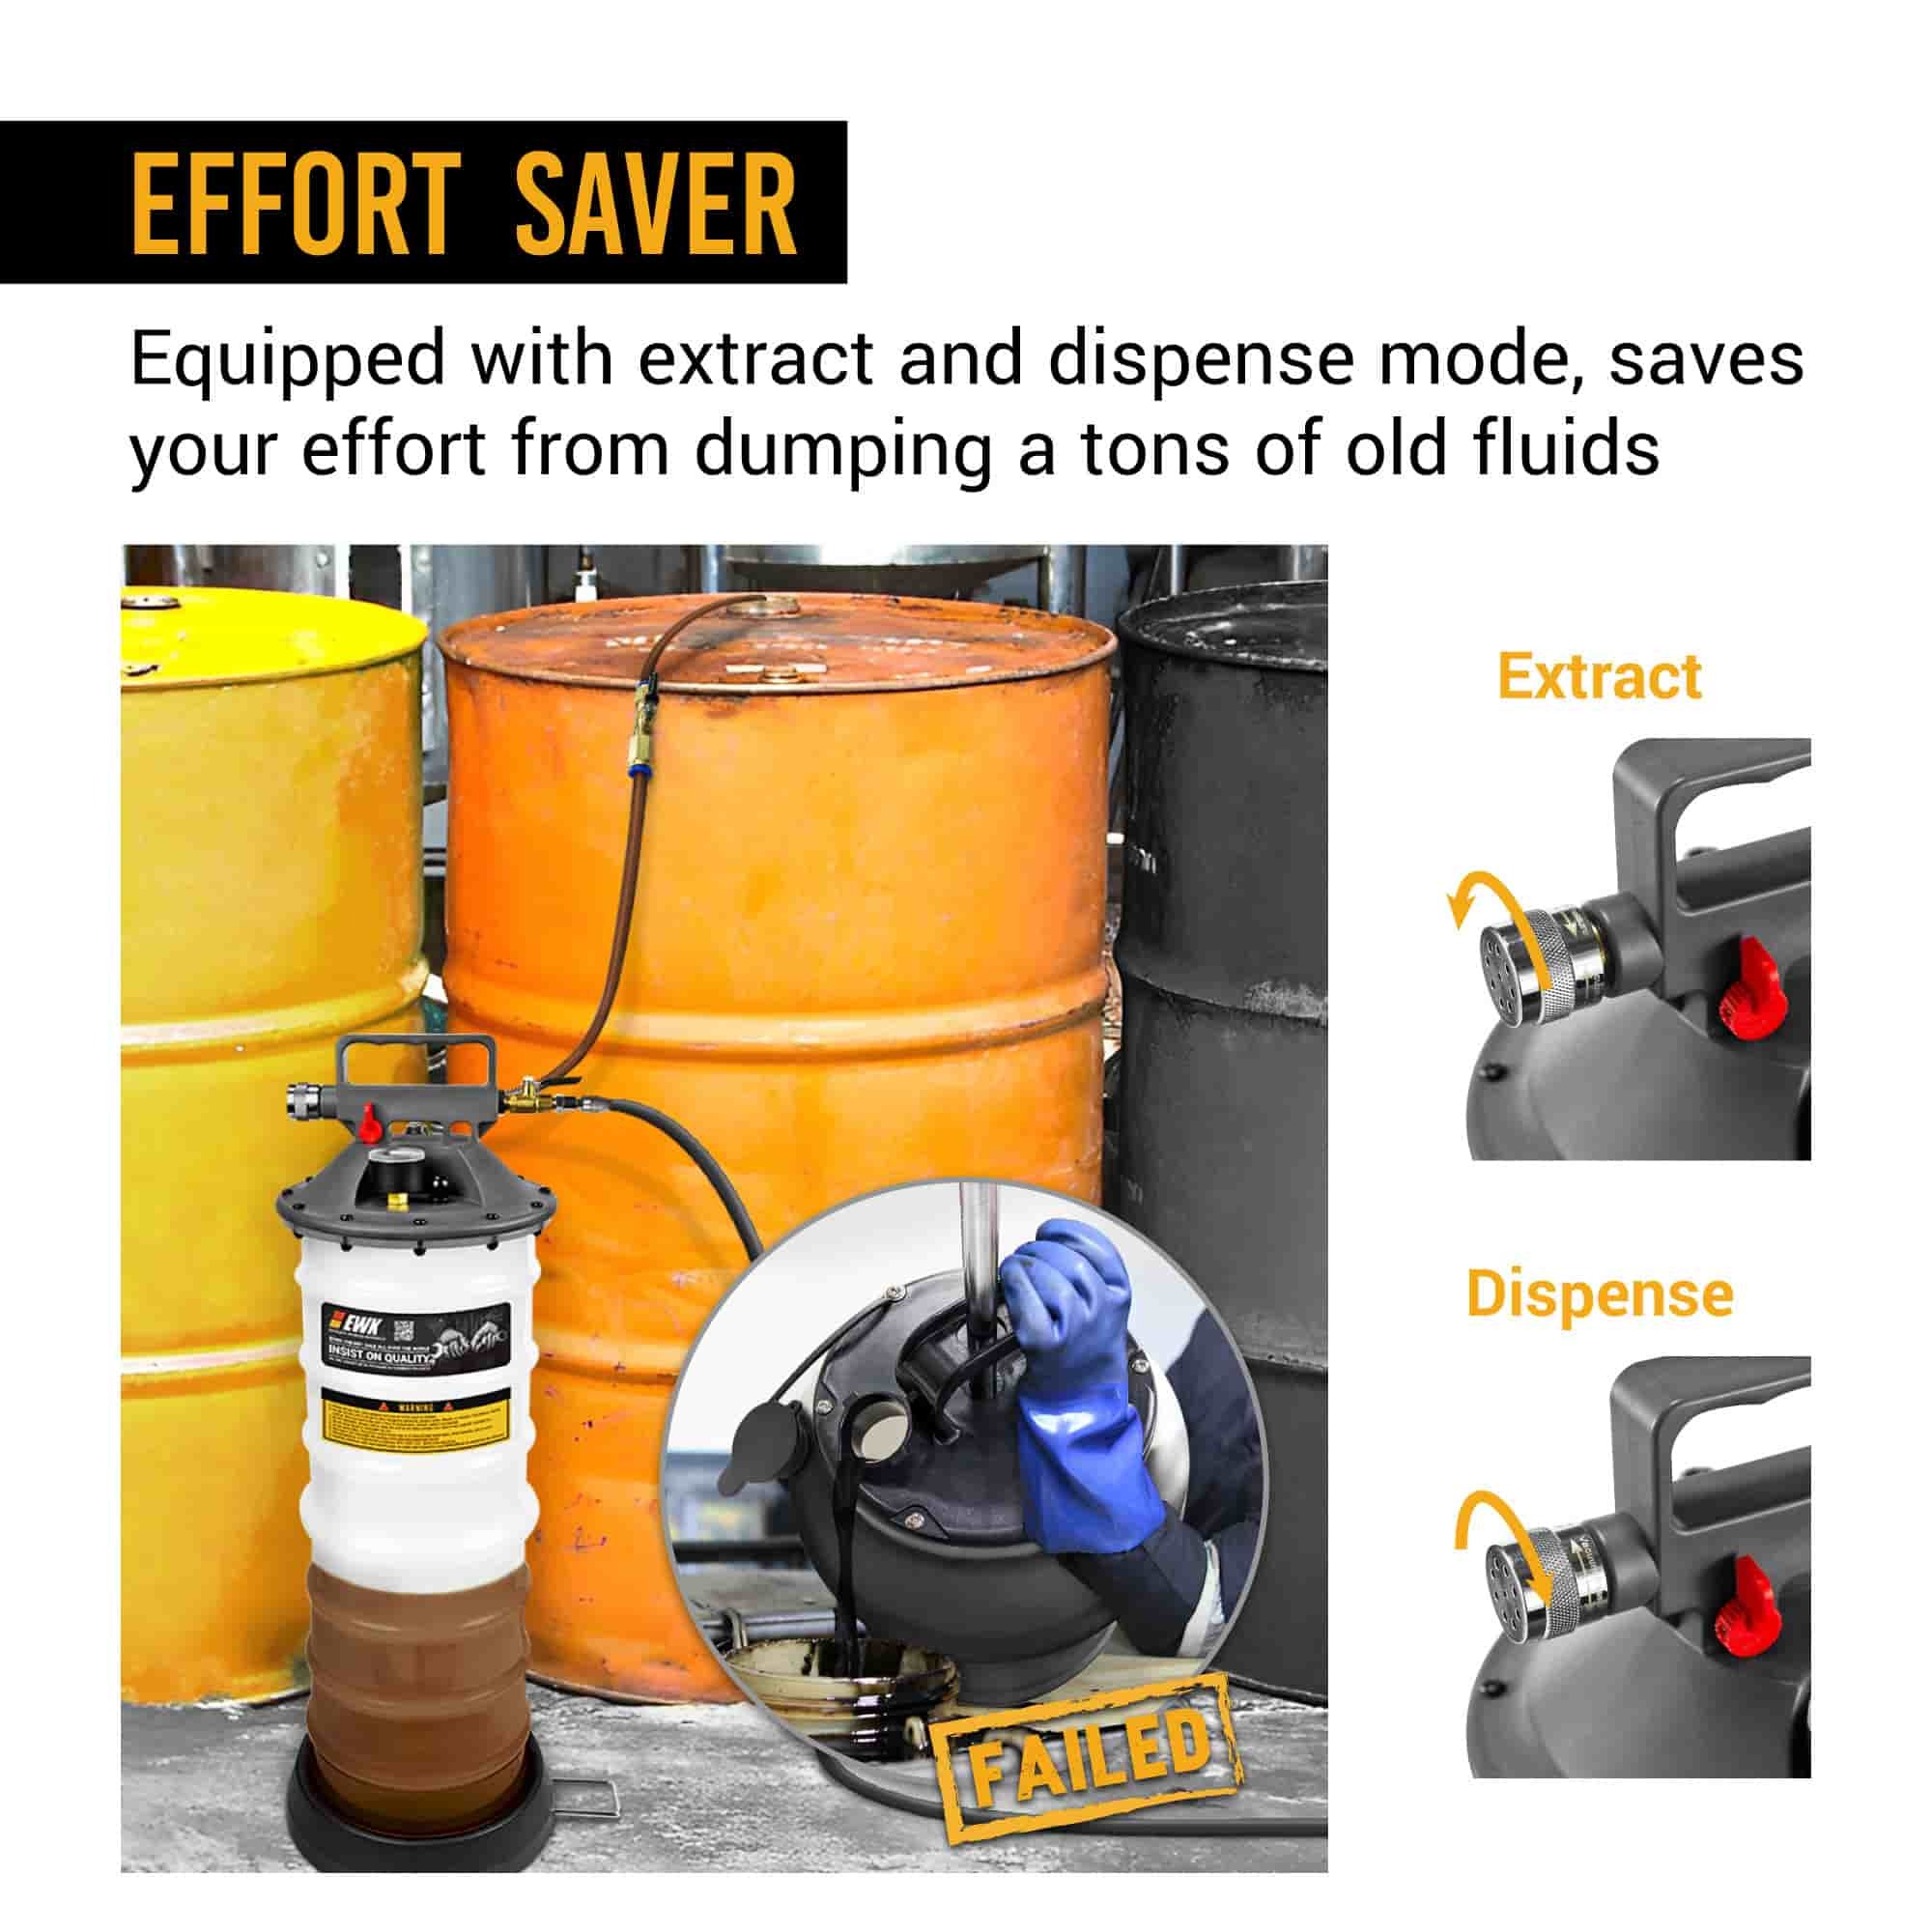 Bomba EWK extractora neumática/manual para cambio de aceite patentada de  3.9 galones para extracción de vacío de fluidos automotrices.